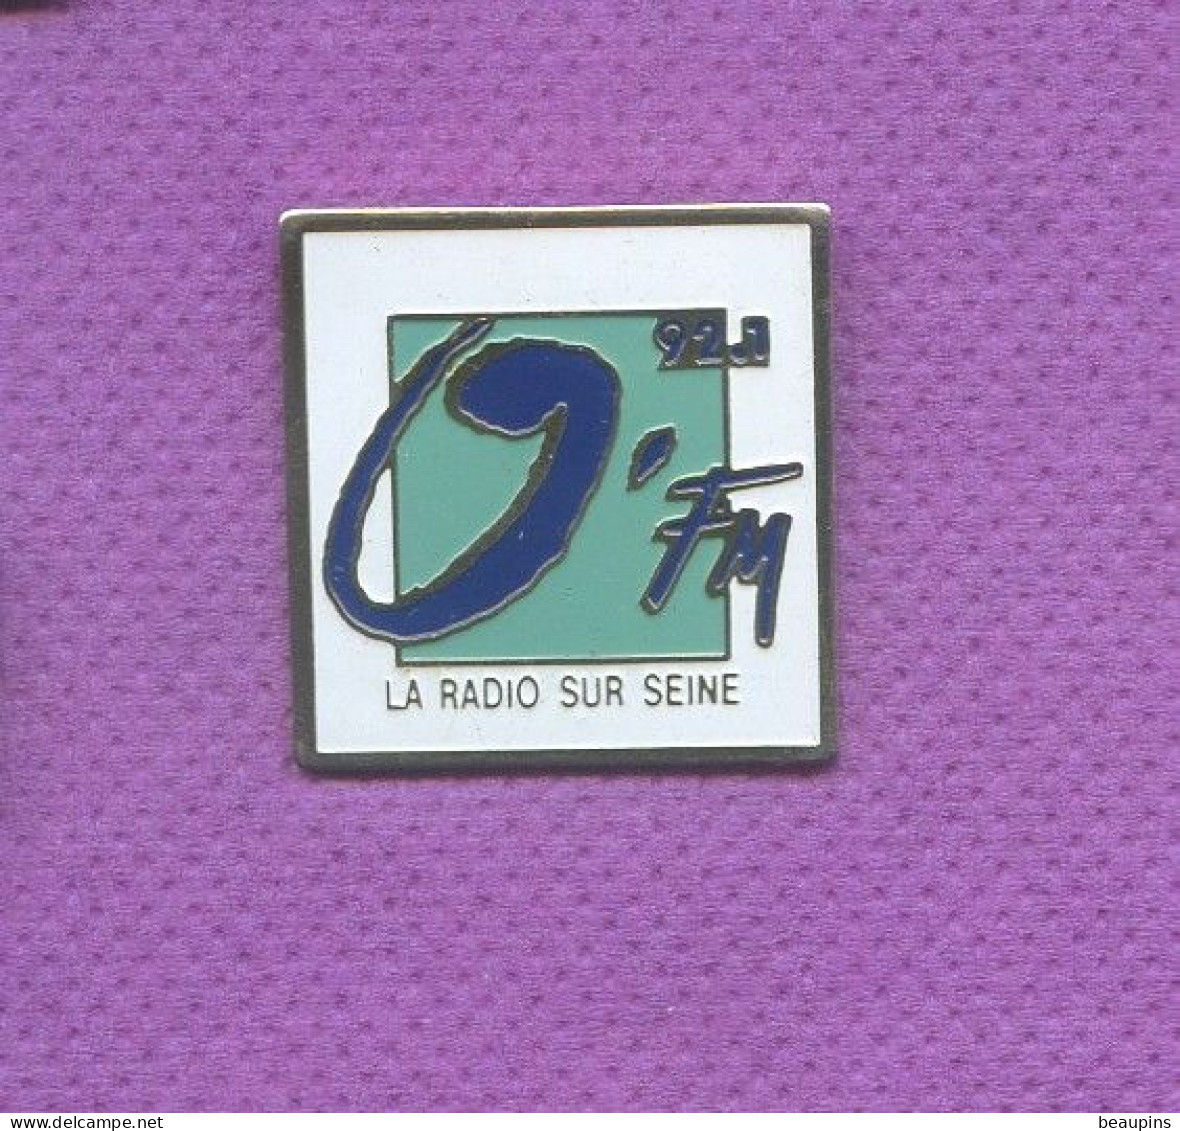 Rare Pins Media O Fm La Radio Sur Seine L148 - Medios De Comunicación